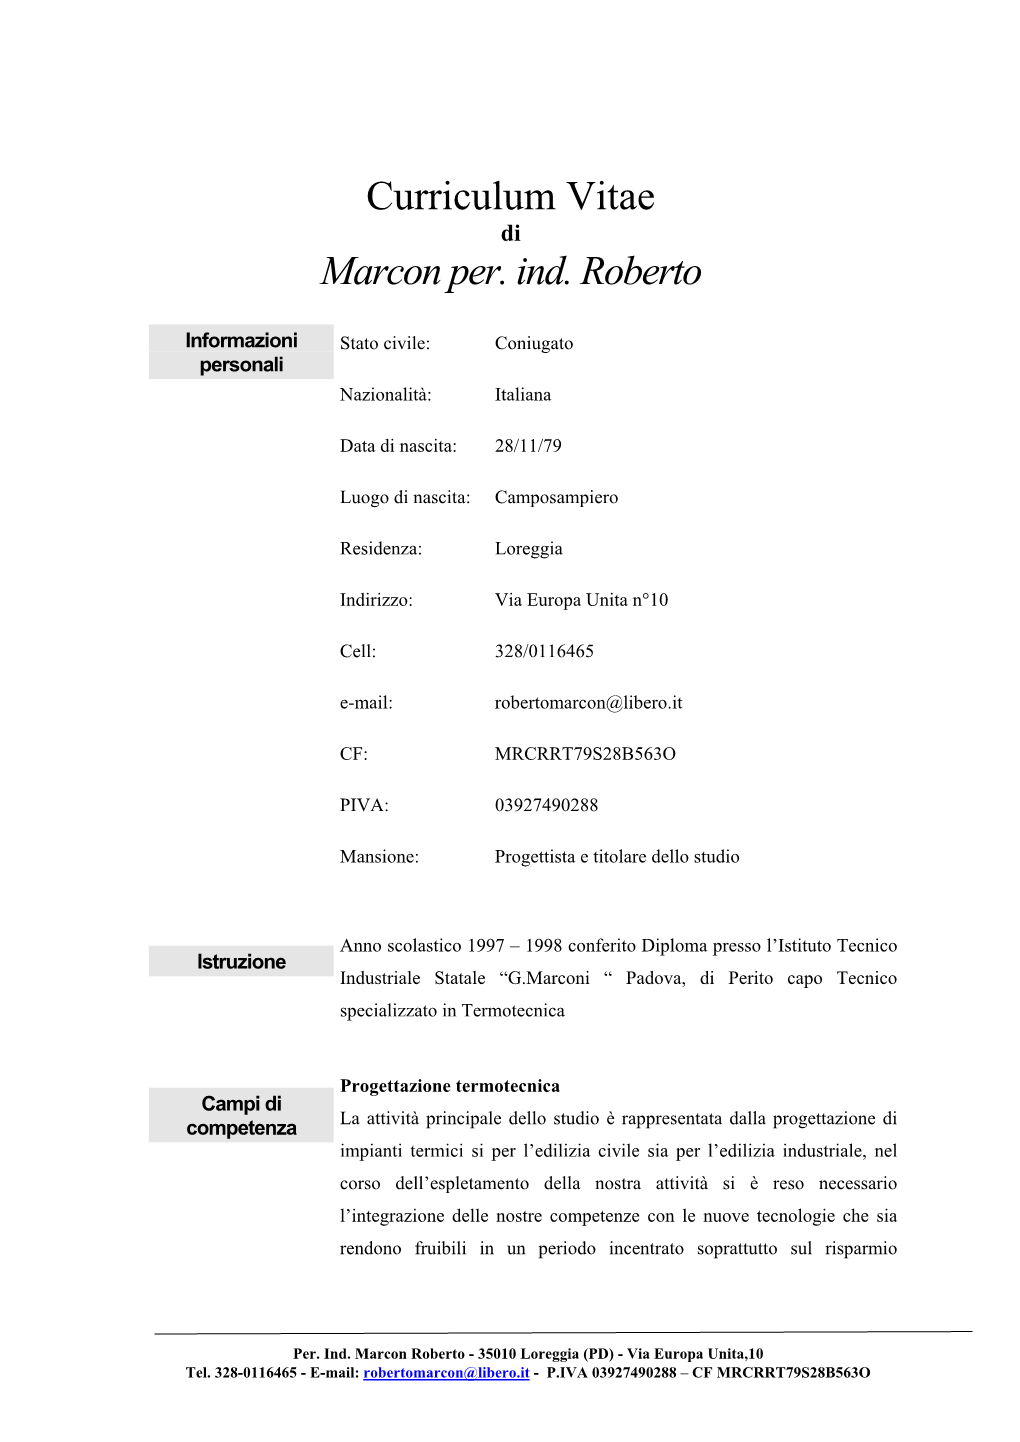 Curriculum Vitae Marcon Per. Ind. Roberto